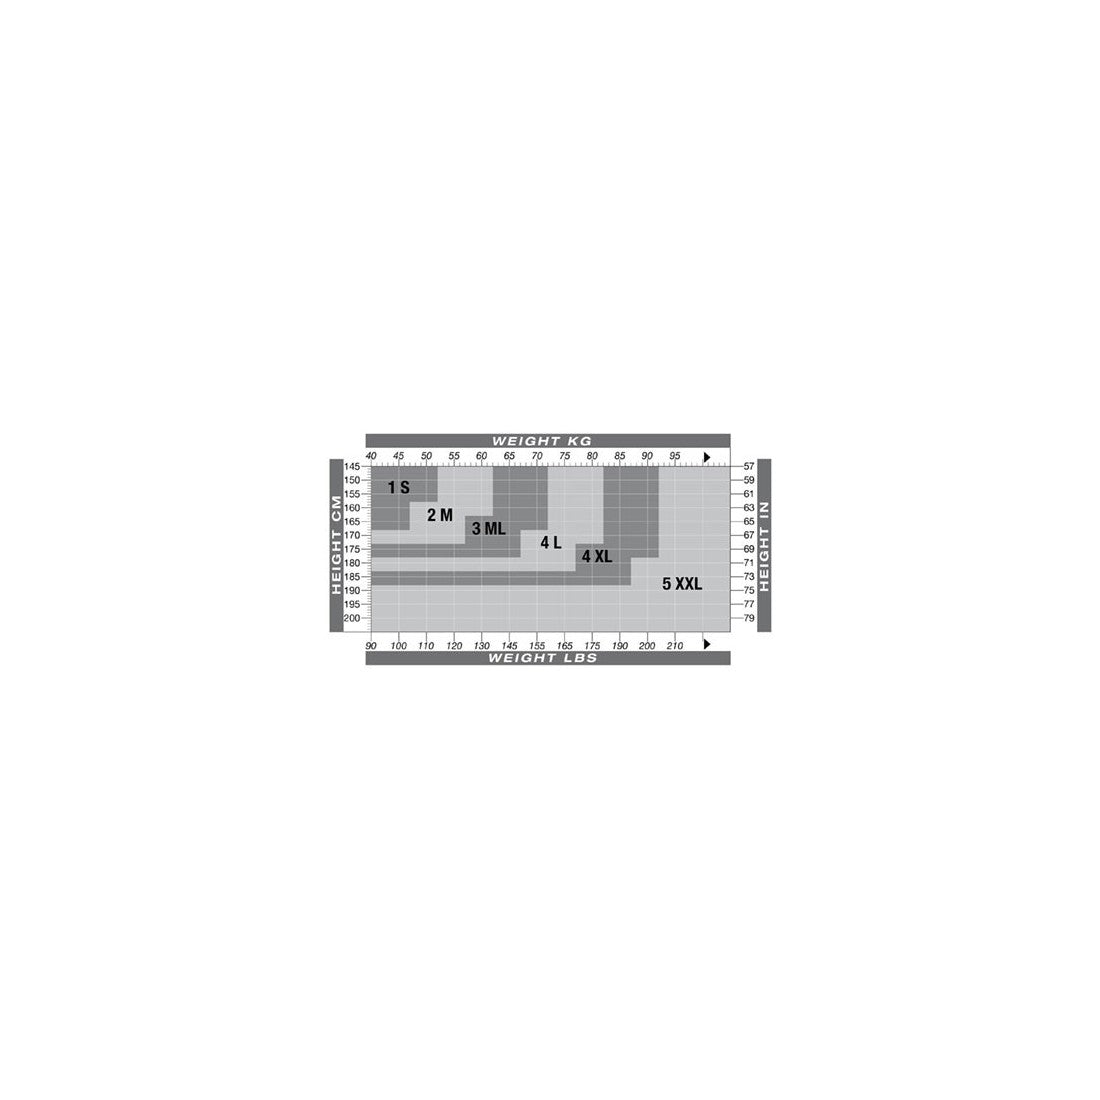 Solidea 나오미 70데니어 시어 타이즈 컴프레션 12 15mmHg 블랙 3ML